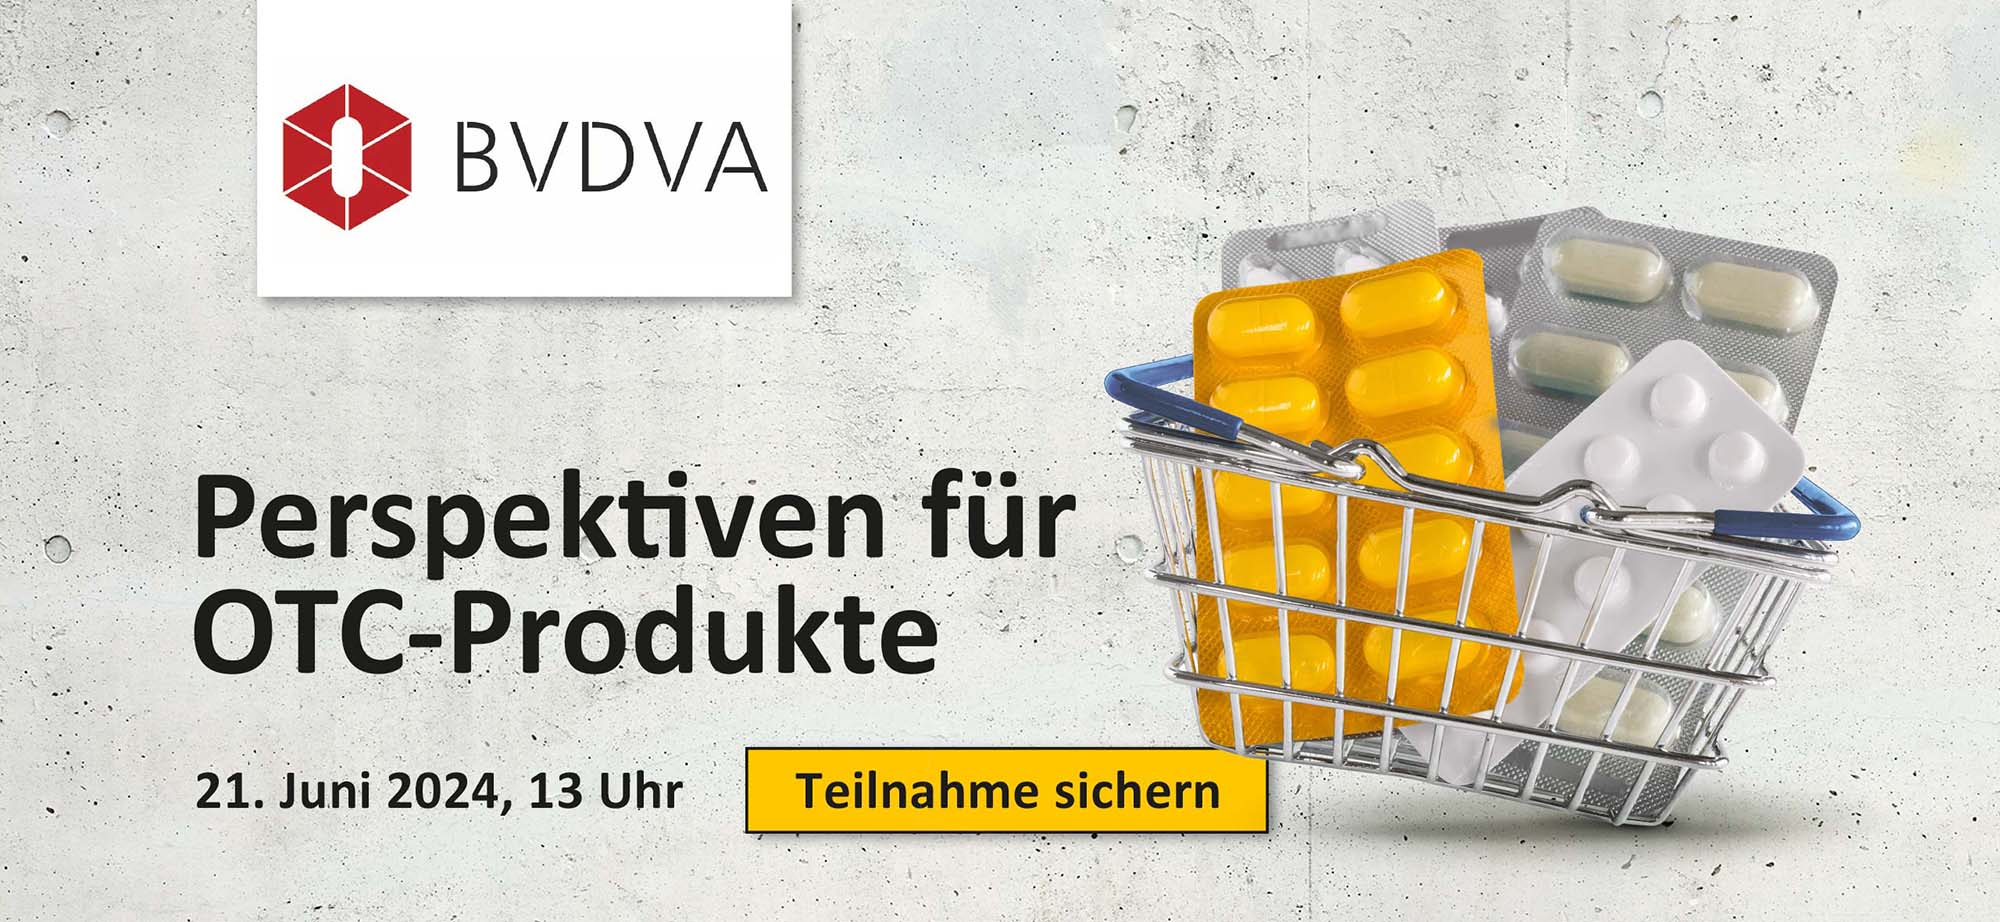 BVDBA - Perspektiven für OTC Produkte. Warenkorb mit Medikamenten und Button Teilnahme sichern.